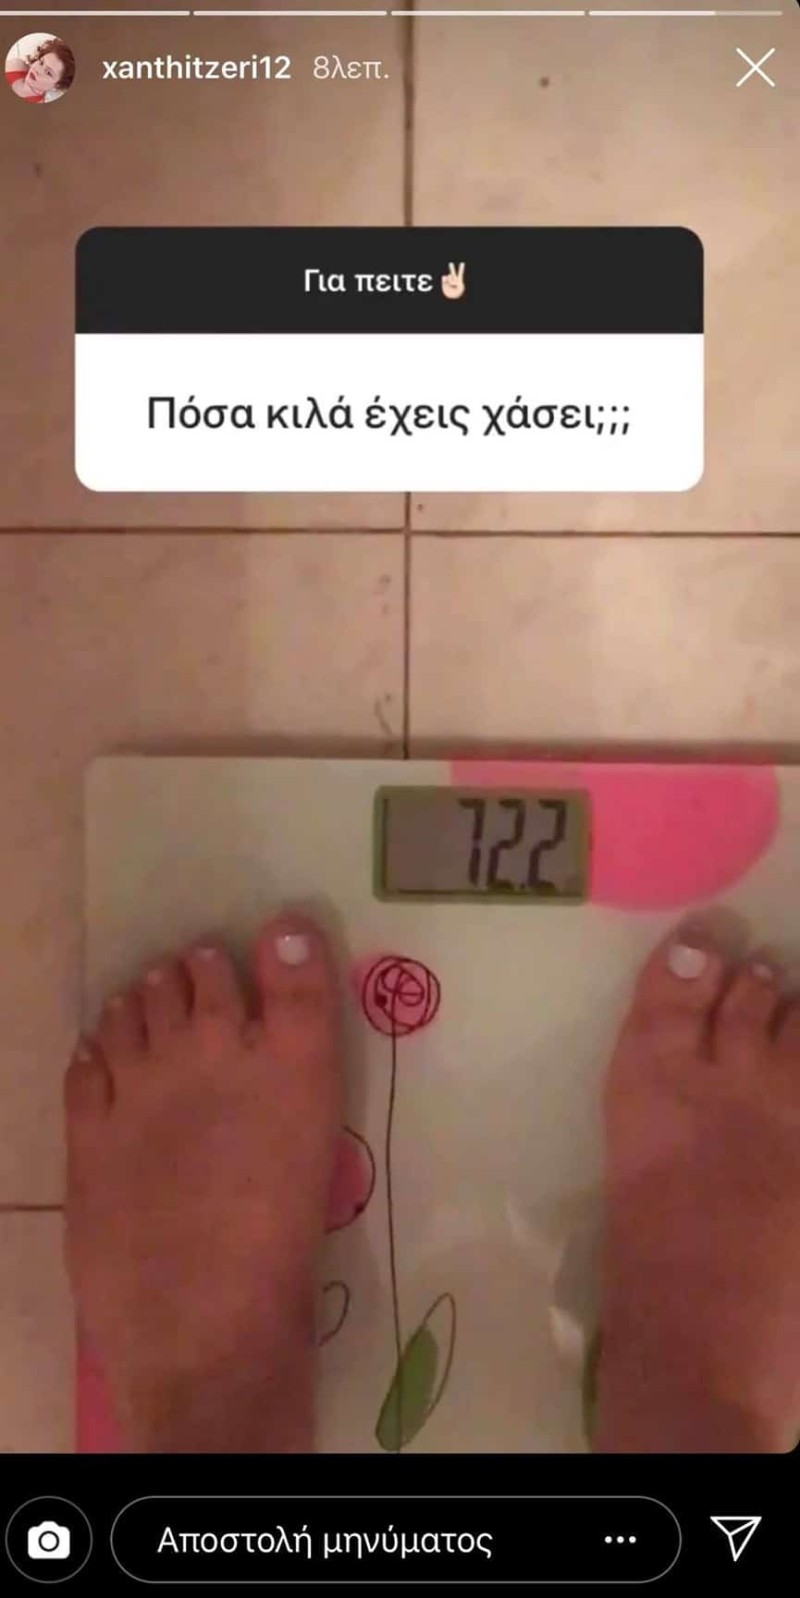  GNTM: Η Ξανθούλα Τζερεφού αποκαλύπτει πόσα κιλά είναι! Αδιανόητο!